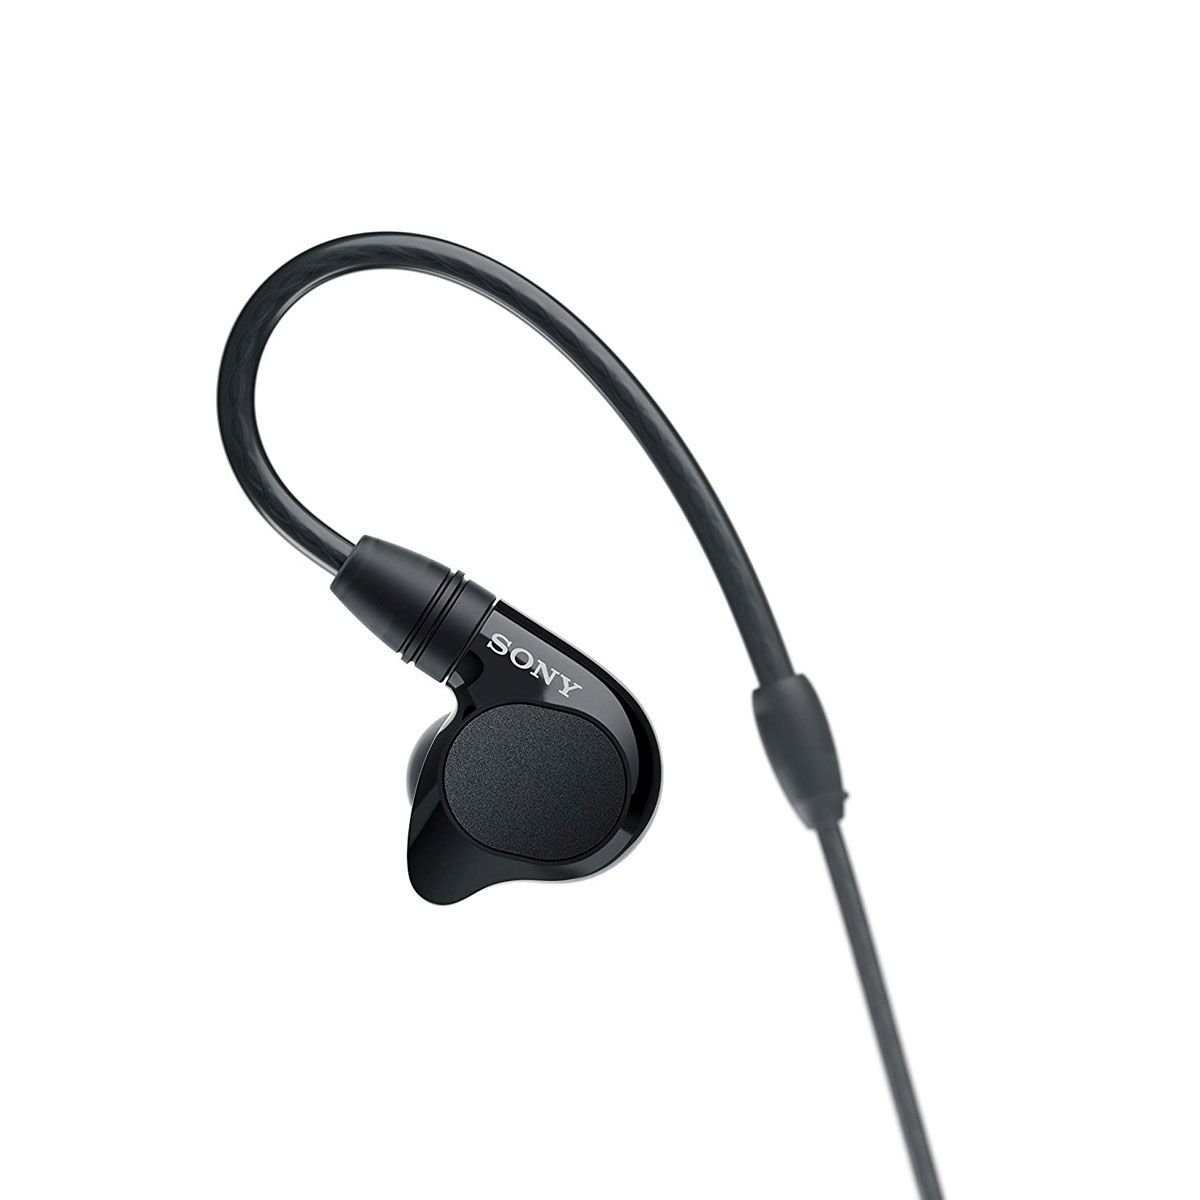 IER-M7 In-Ear Monitor Headphones